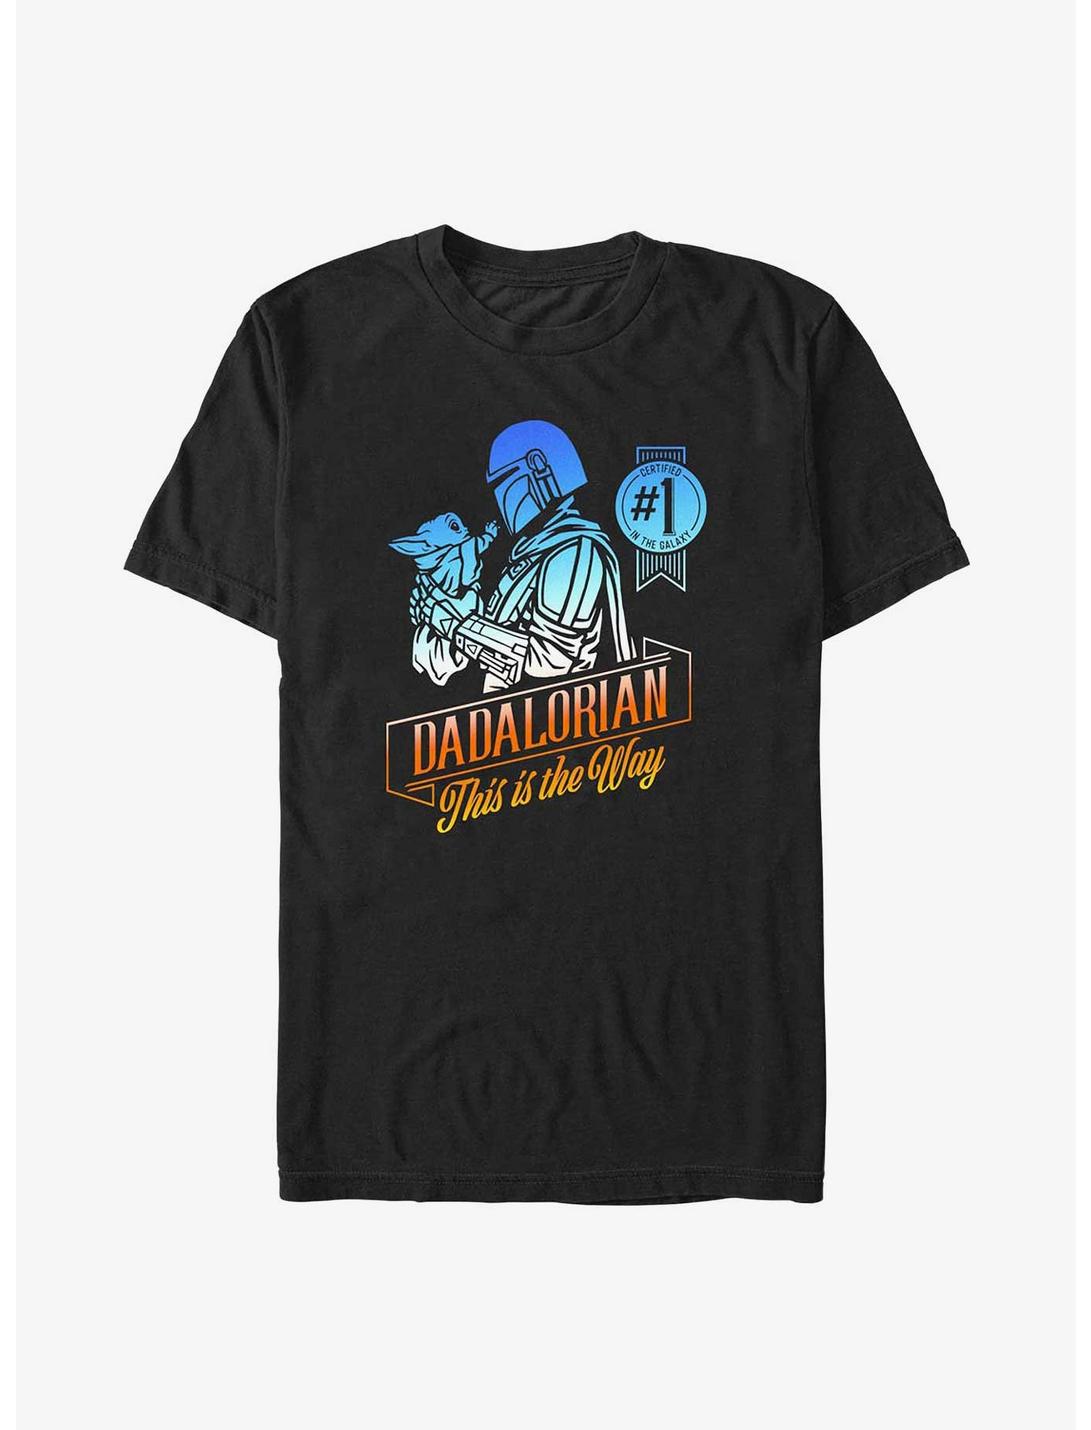 Star Wars The Mandalorian Certified Dadalorian T-Shirt, BLACK, hi-res